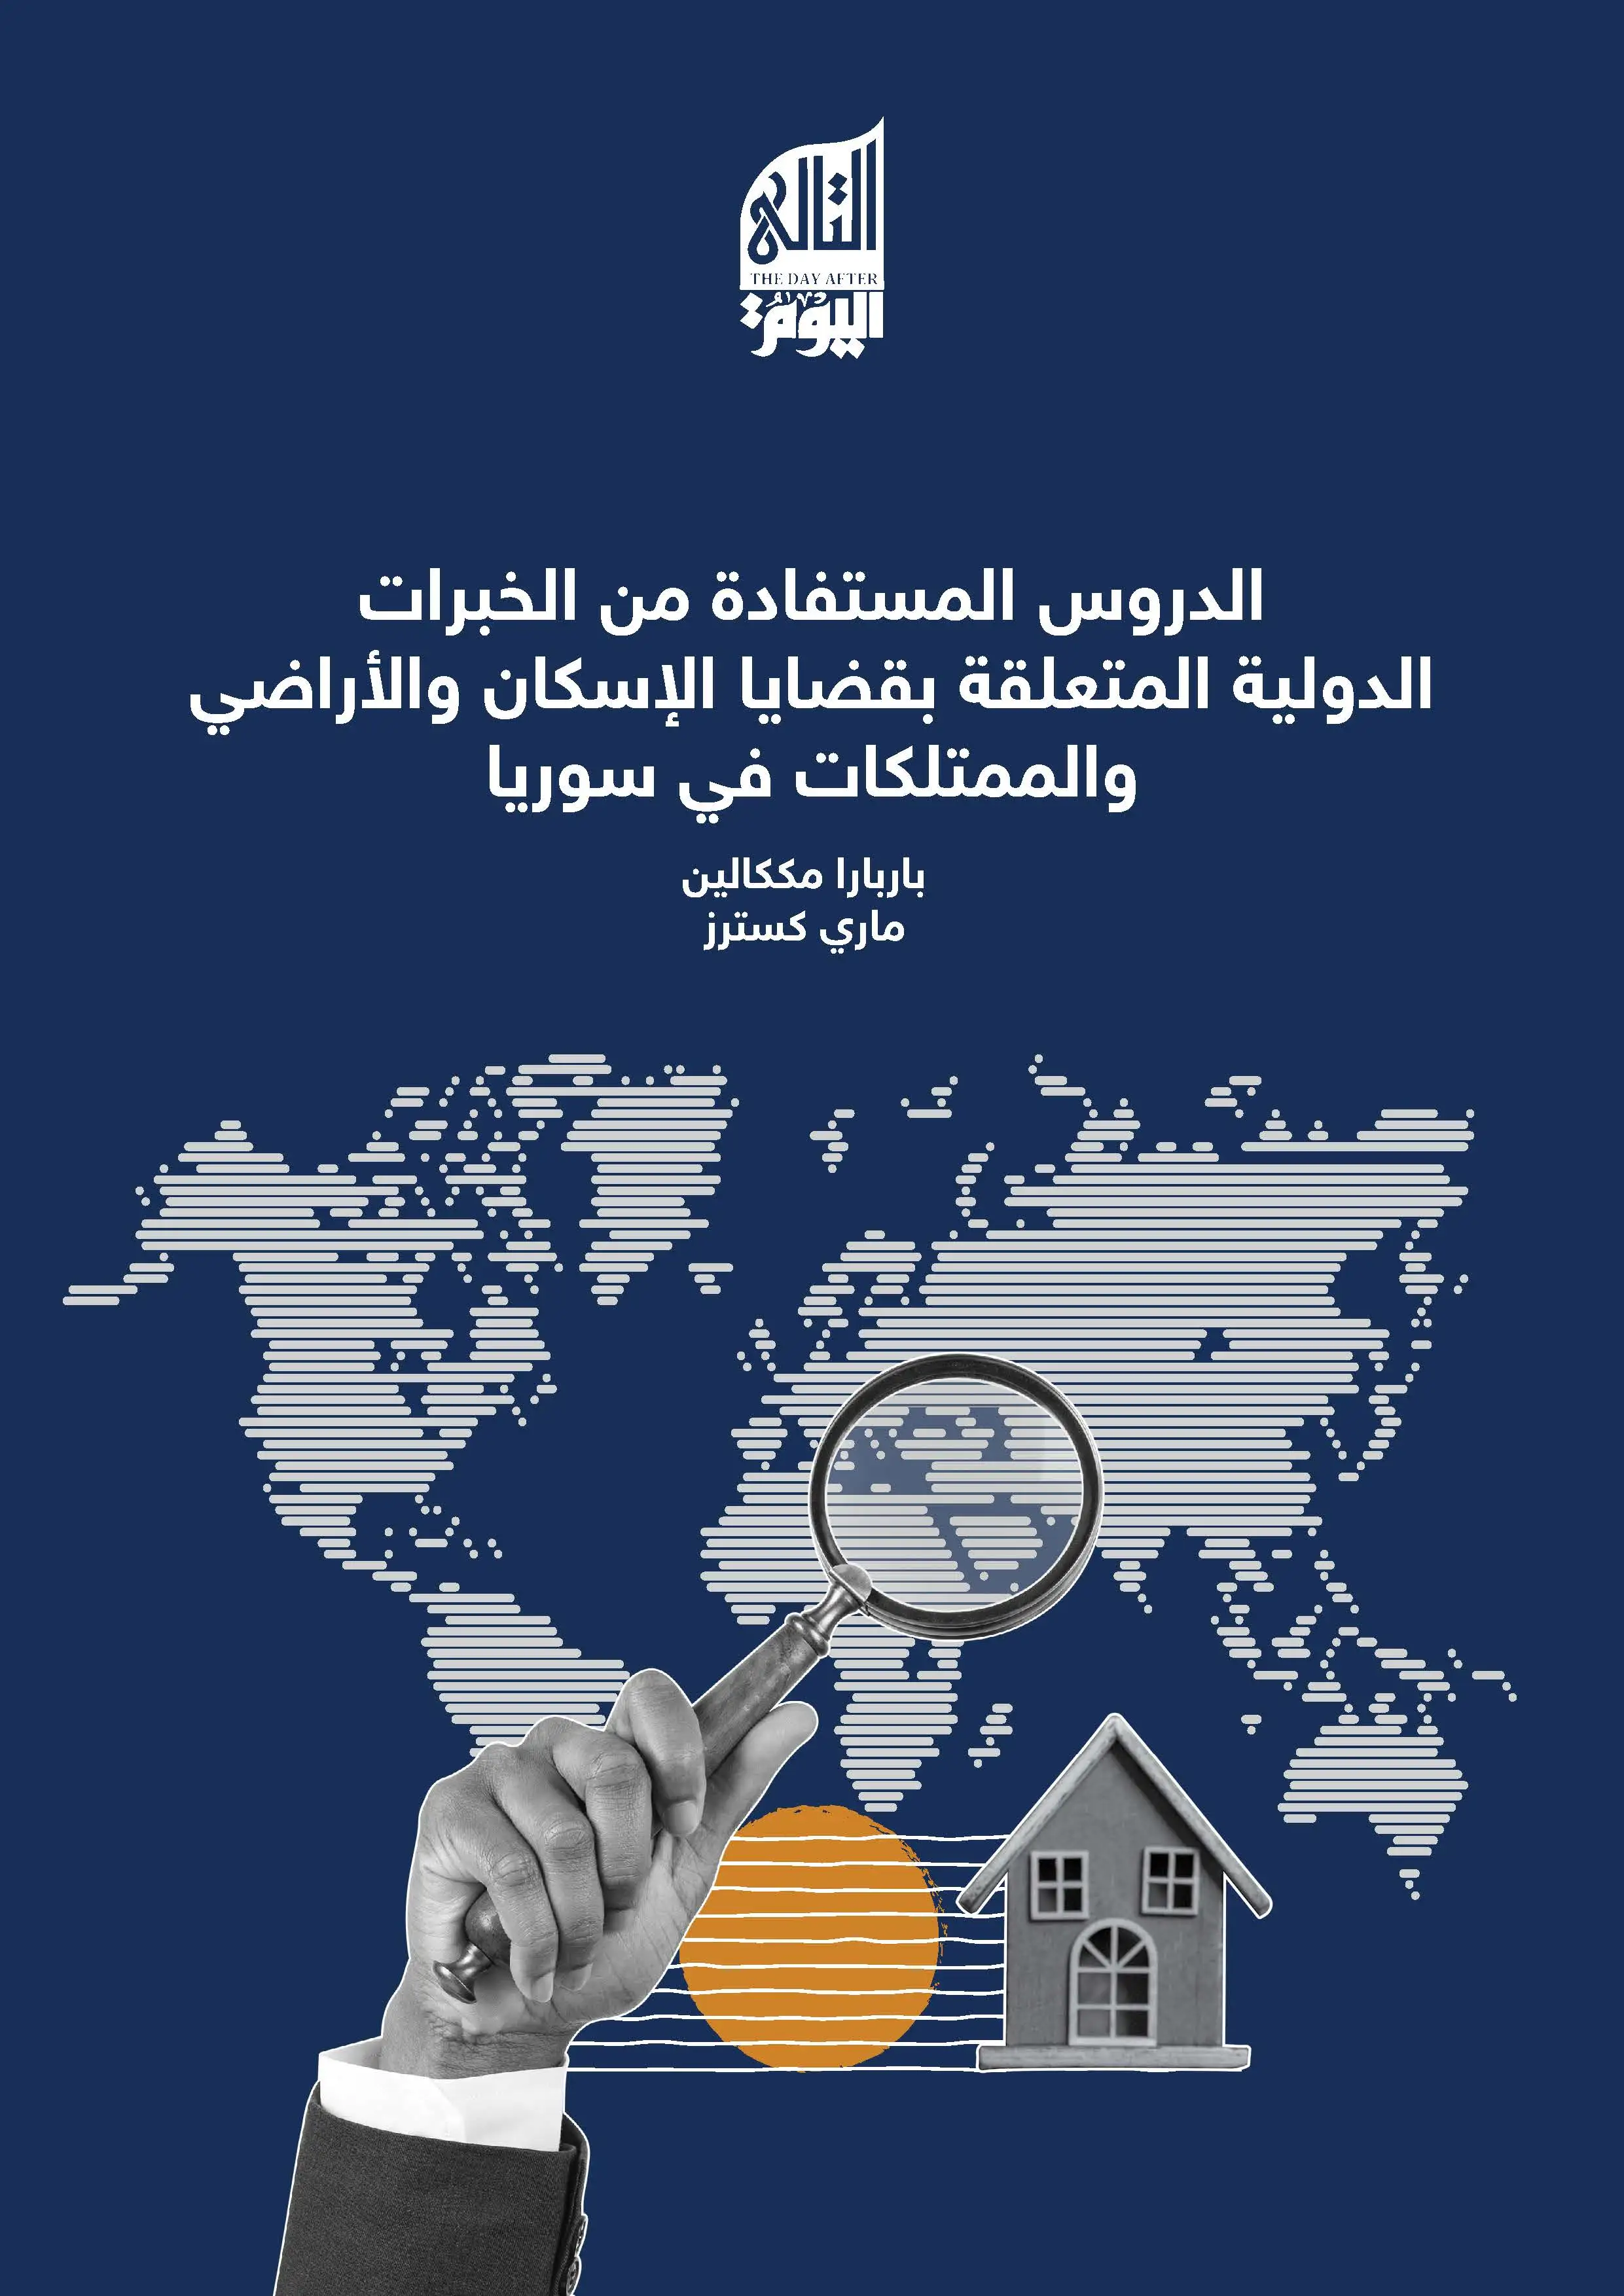 الدروس المستفادة من الخبرات الدولية المتعلقة بقضايا الإسكان والأراضي والممتلكات في سوريا